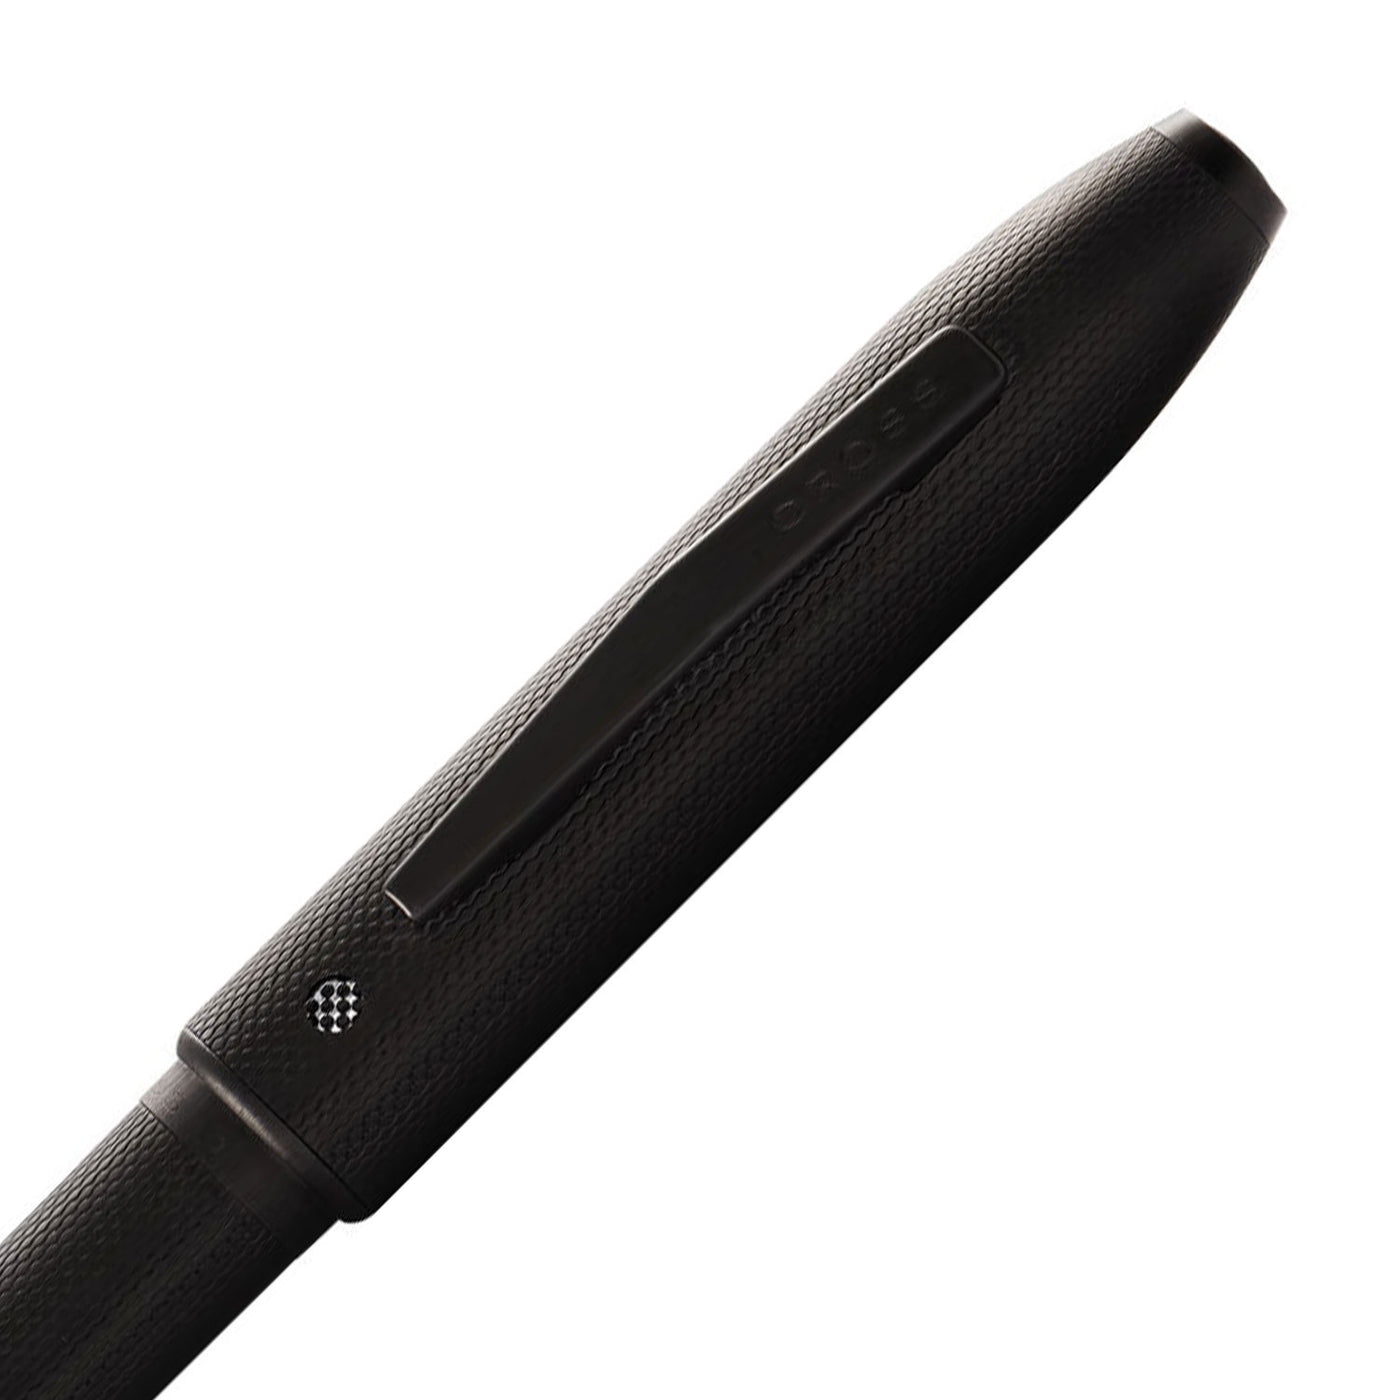 Cross Tech4 Multifunction Ball Pen - Textured Black PVD 3